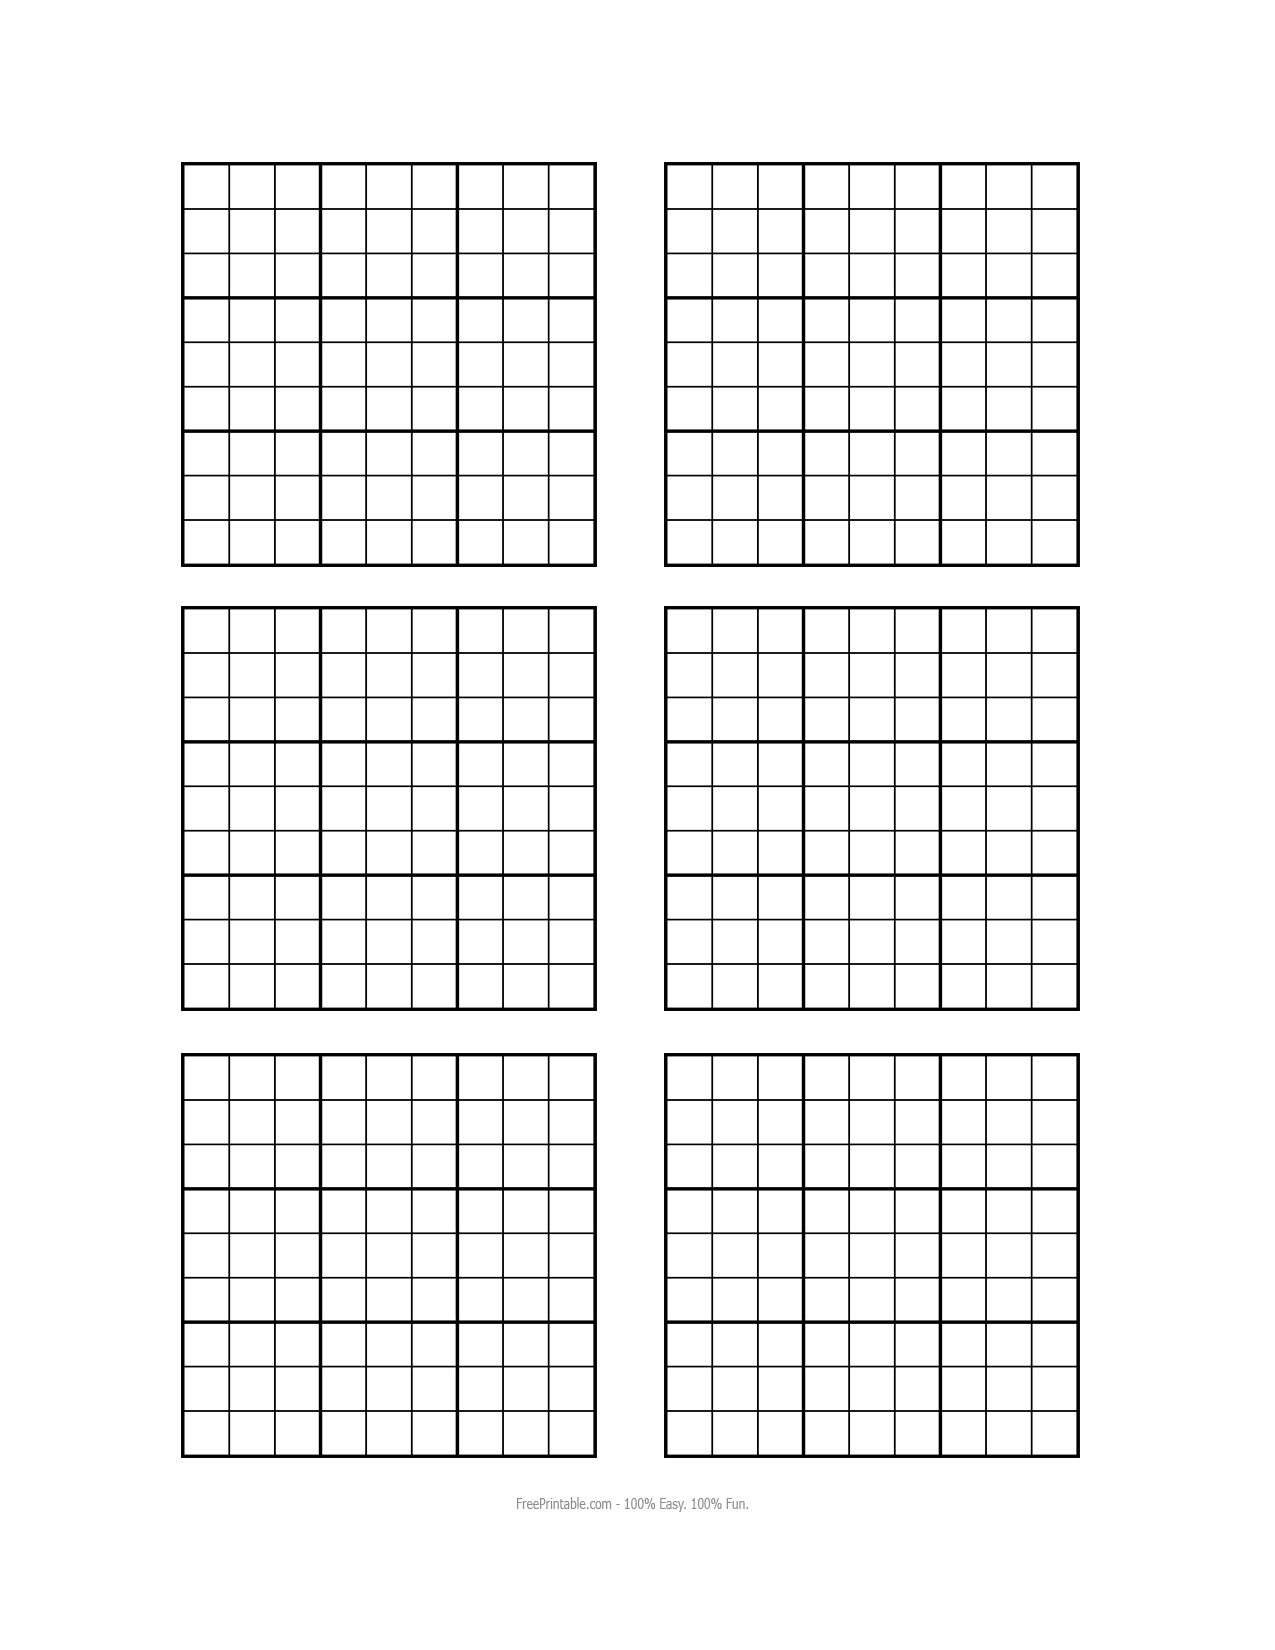 Printable Sudoku Sheets Blank Sudoku Printable